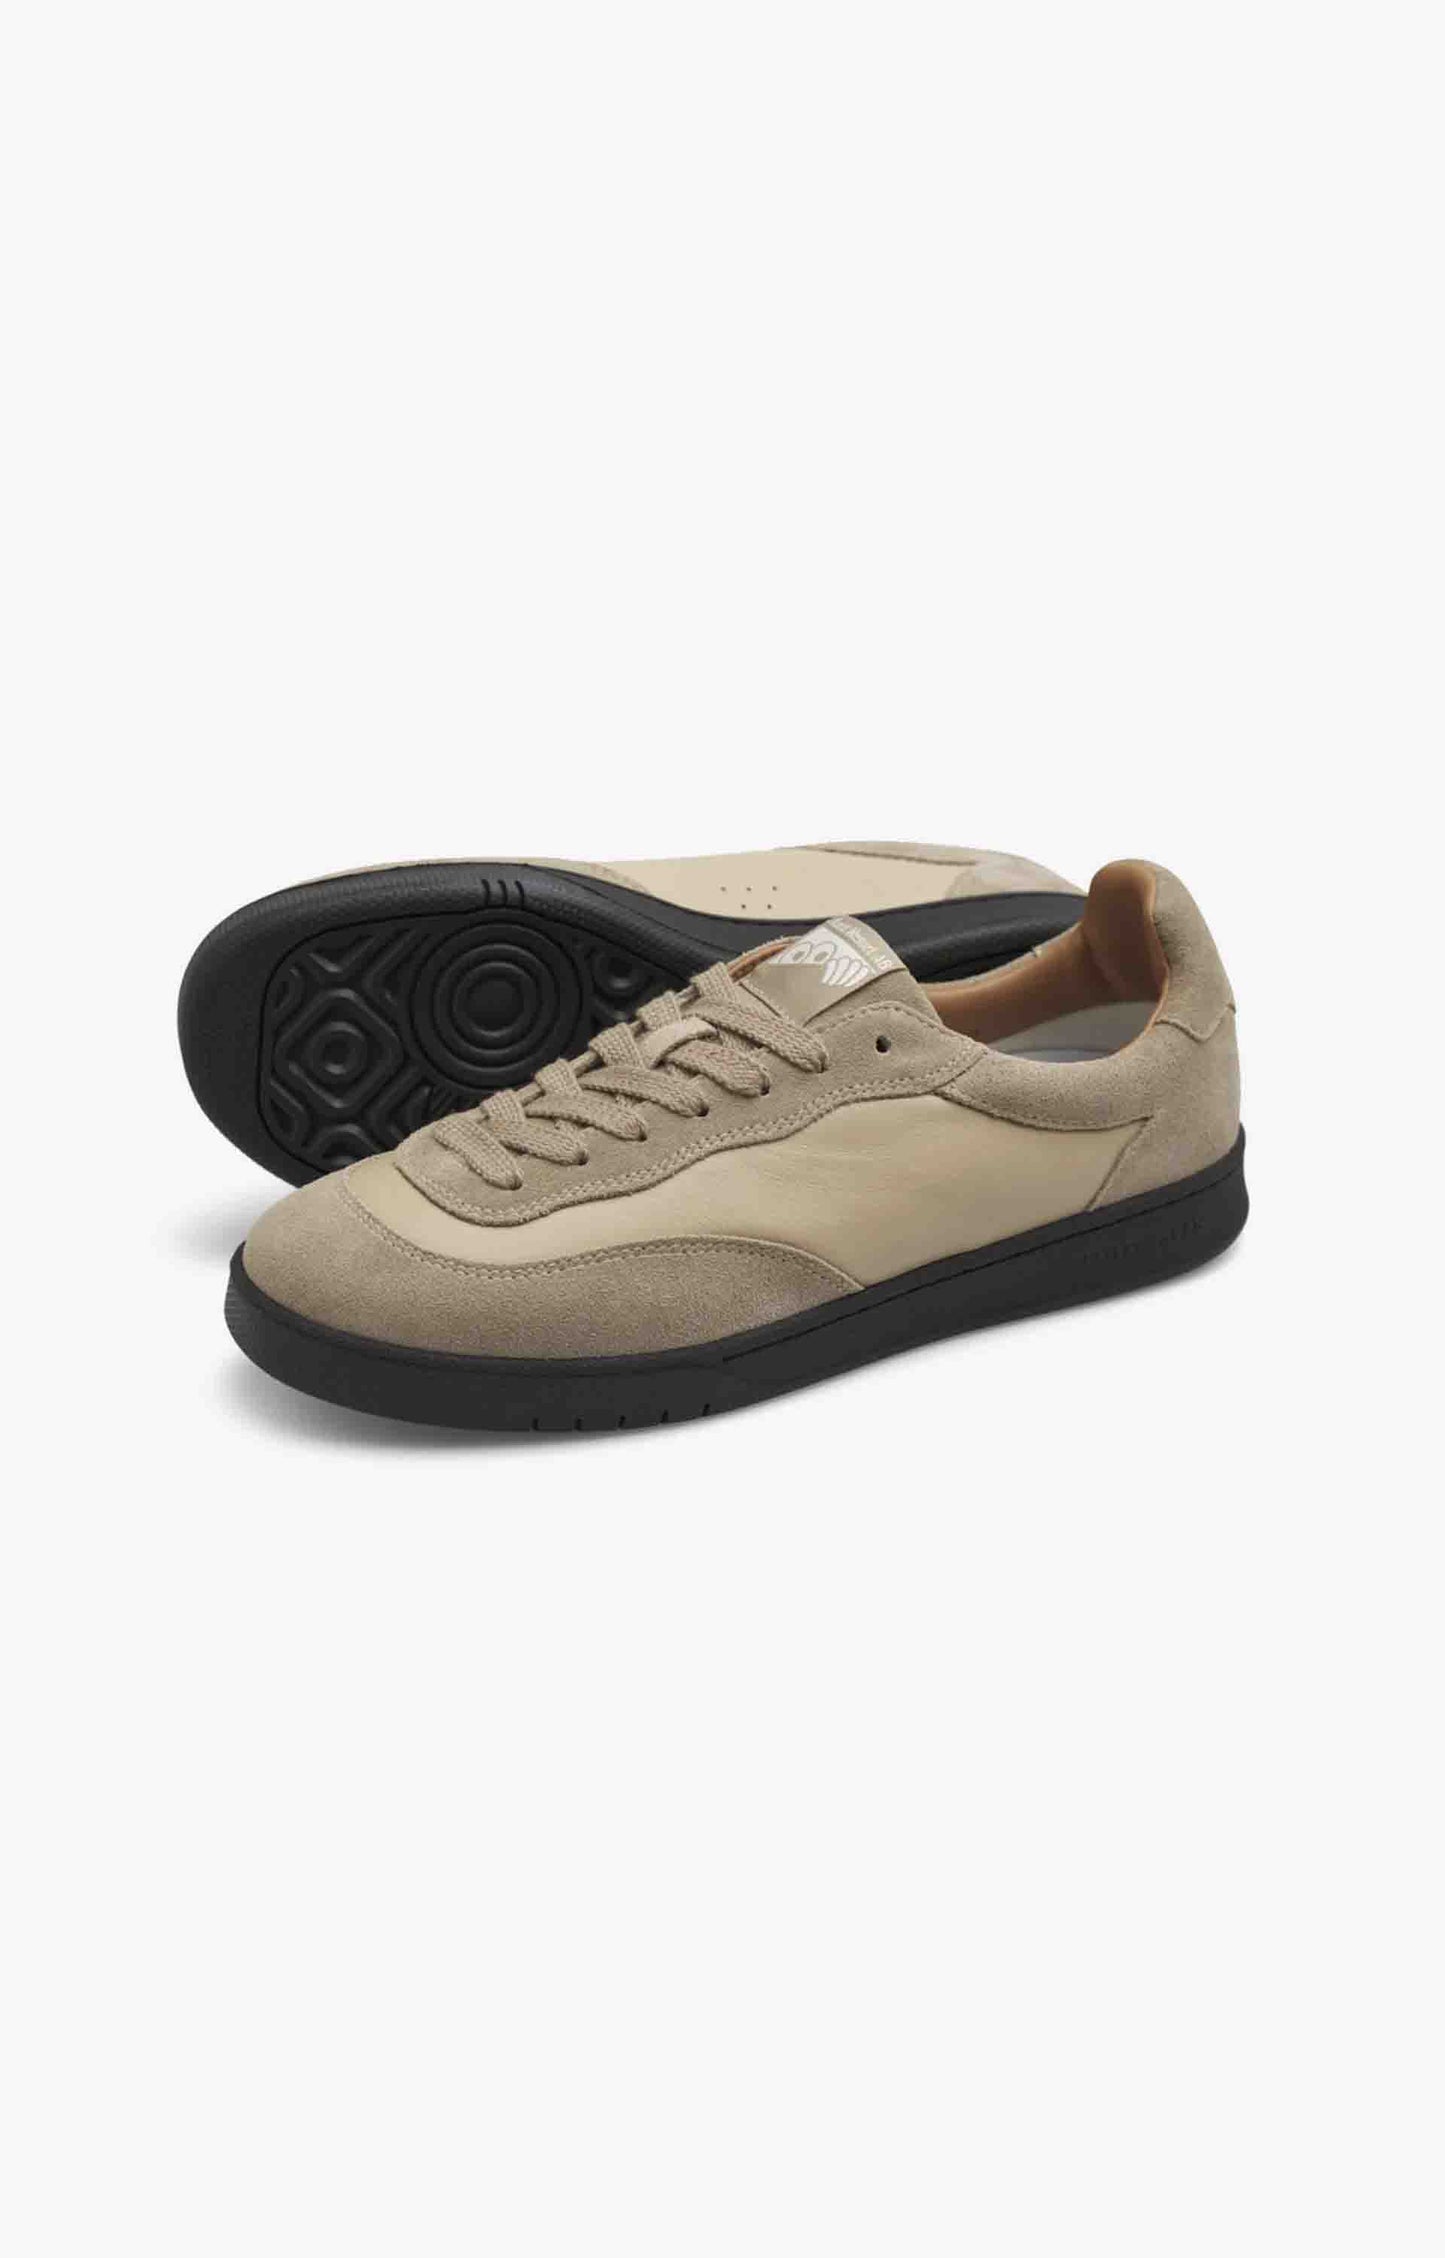 Last Resort AB Suede Lo CM001 Mens Shoes, Safari/Black